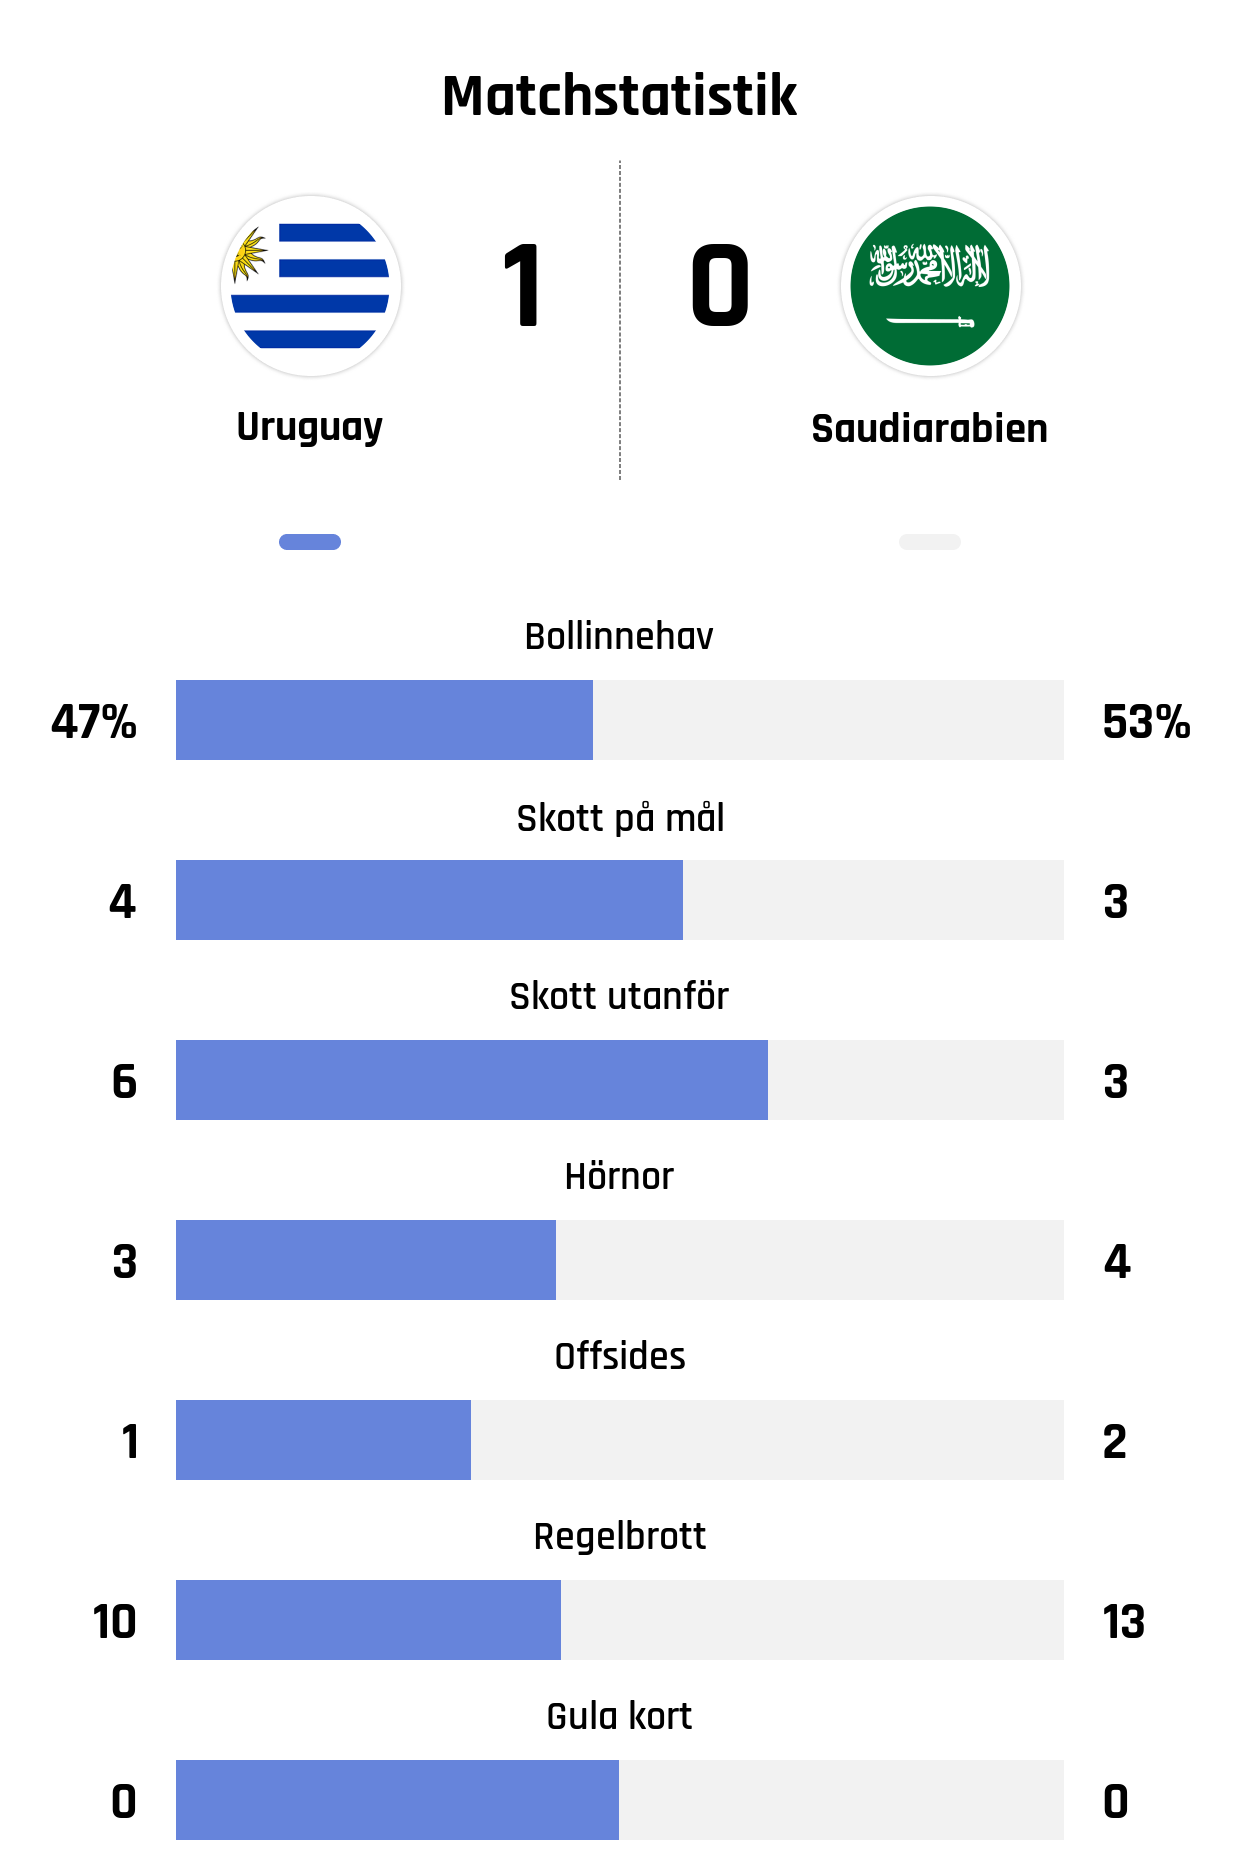 Bollinnehav 47%-53%
Skott på mål 4-3
Skott utanför 6-3
Hörnor 3-4
Offsides 1-2
Regelbrott 10-13
Gula kort 0-0